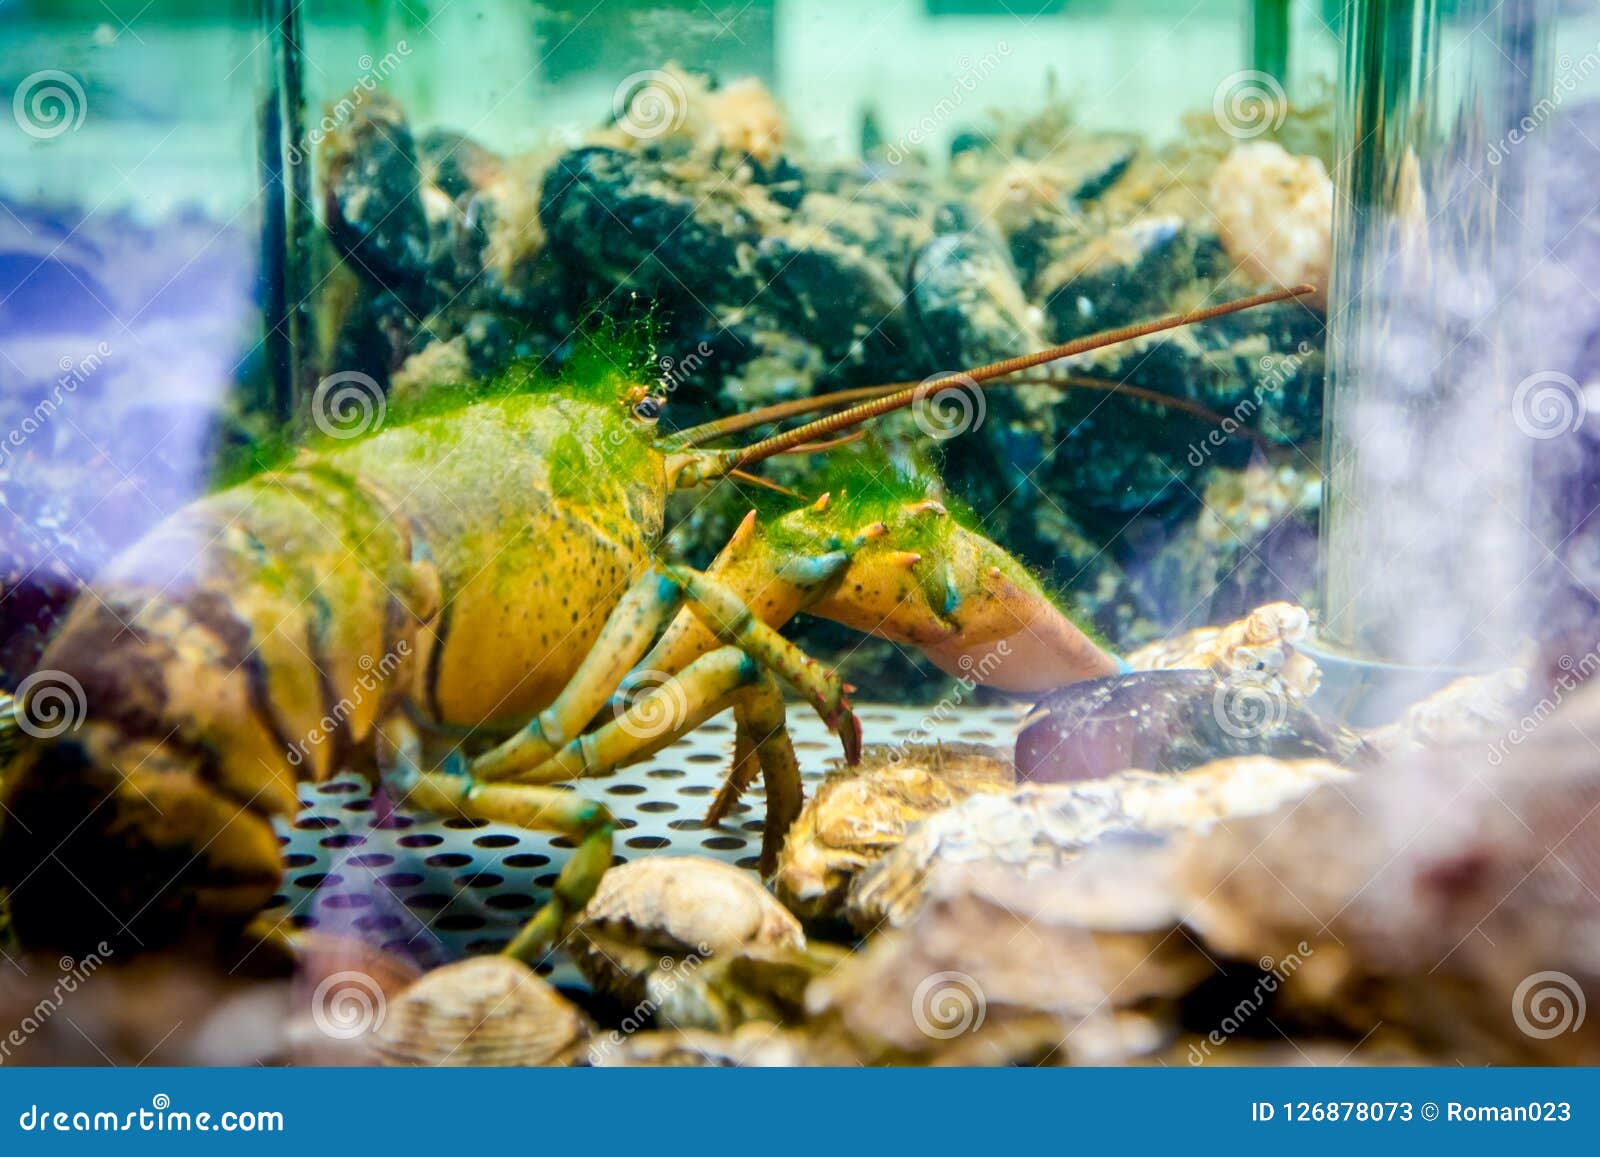 aquarium crayfish for sale near me